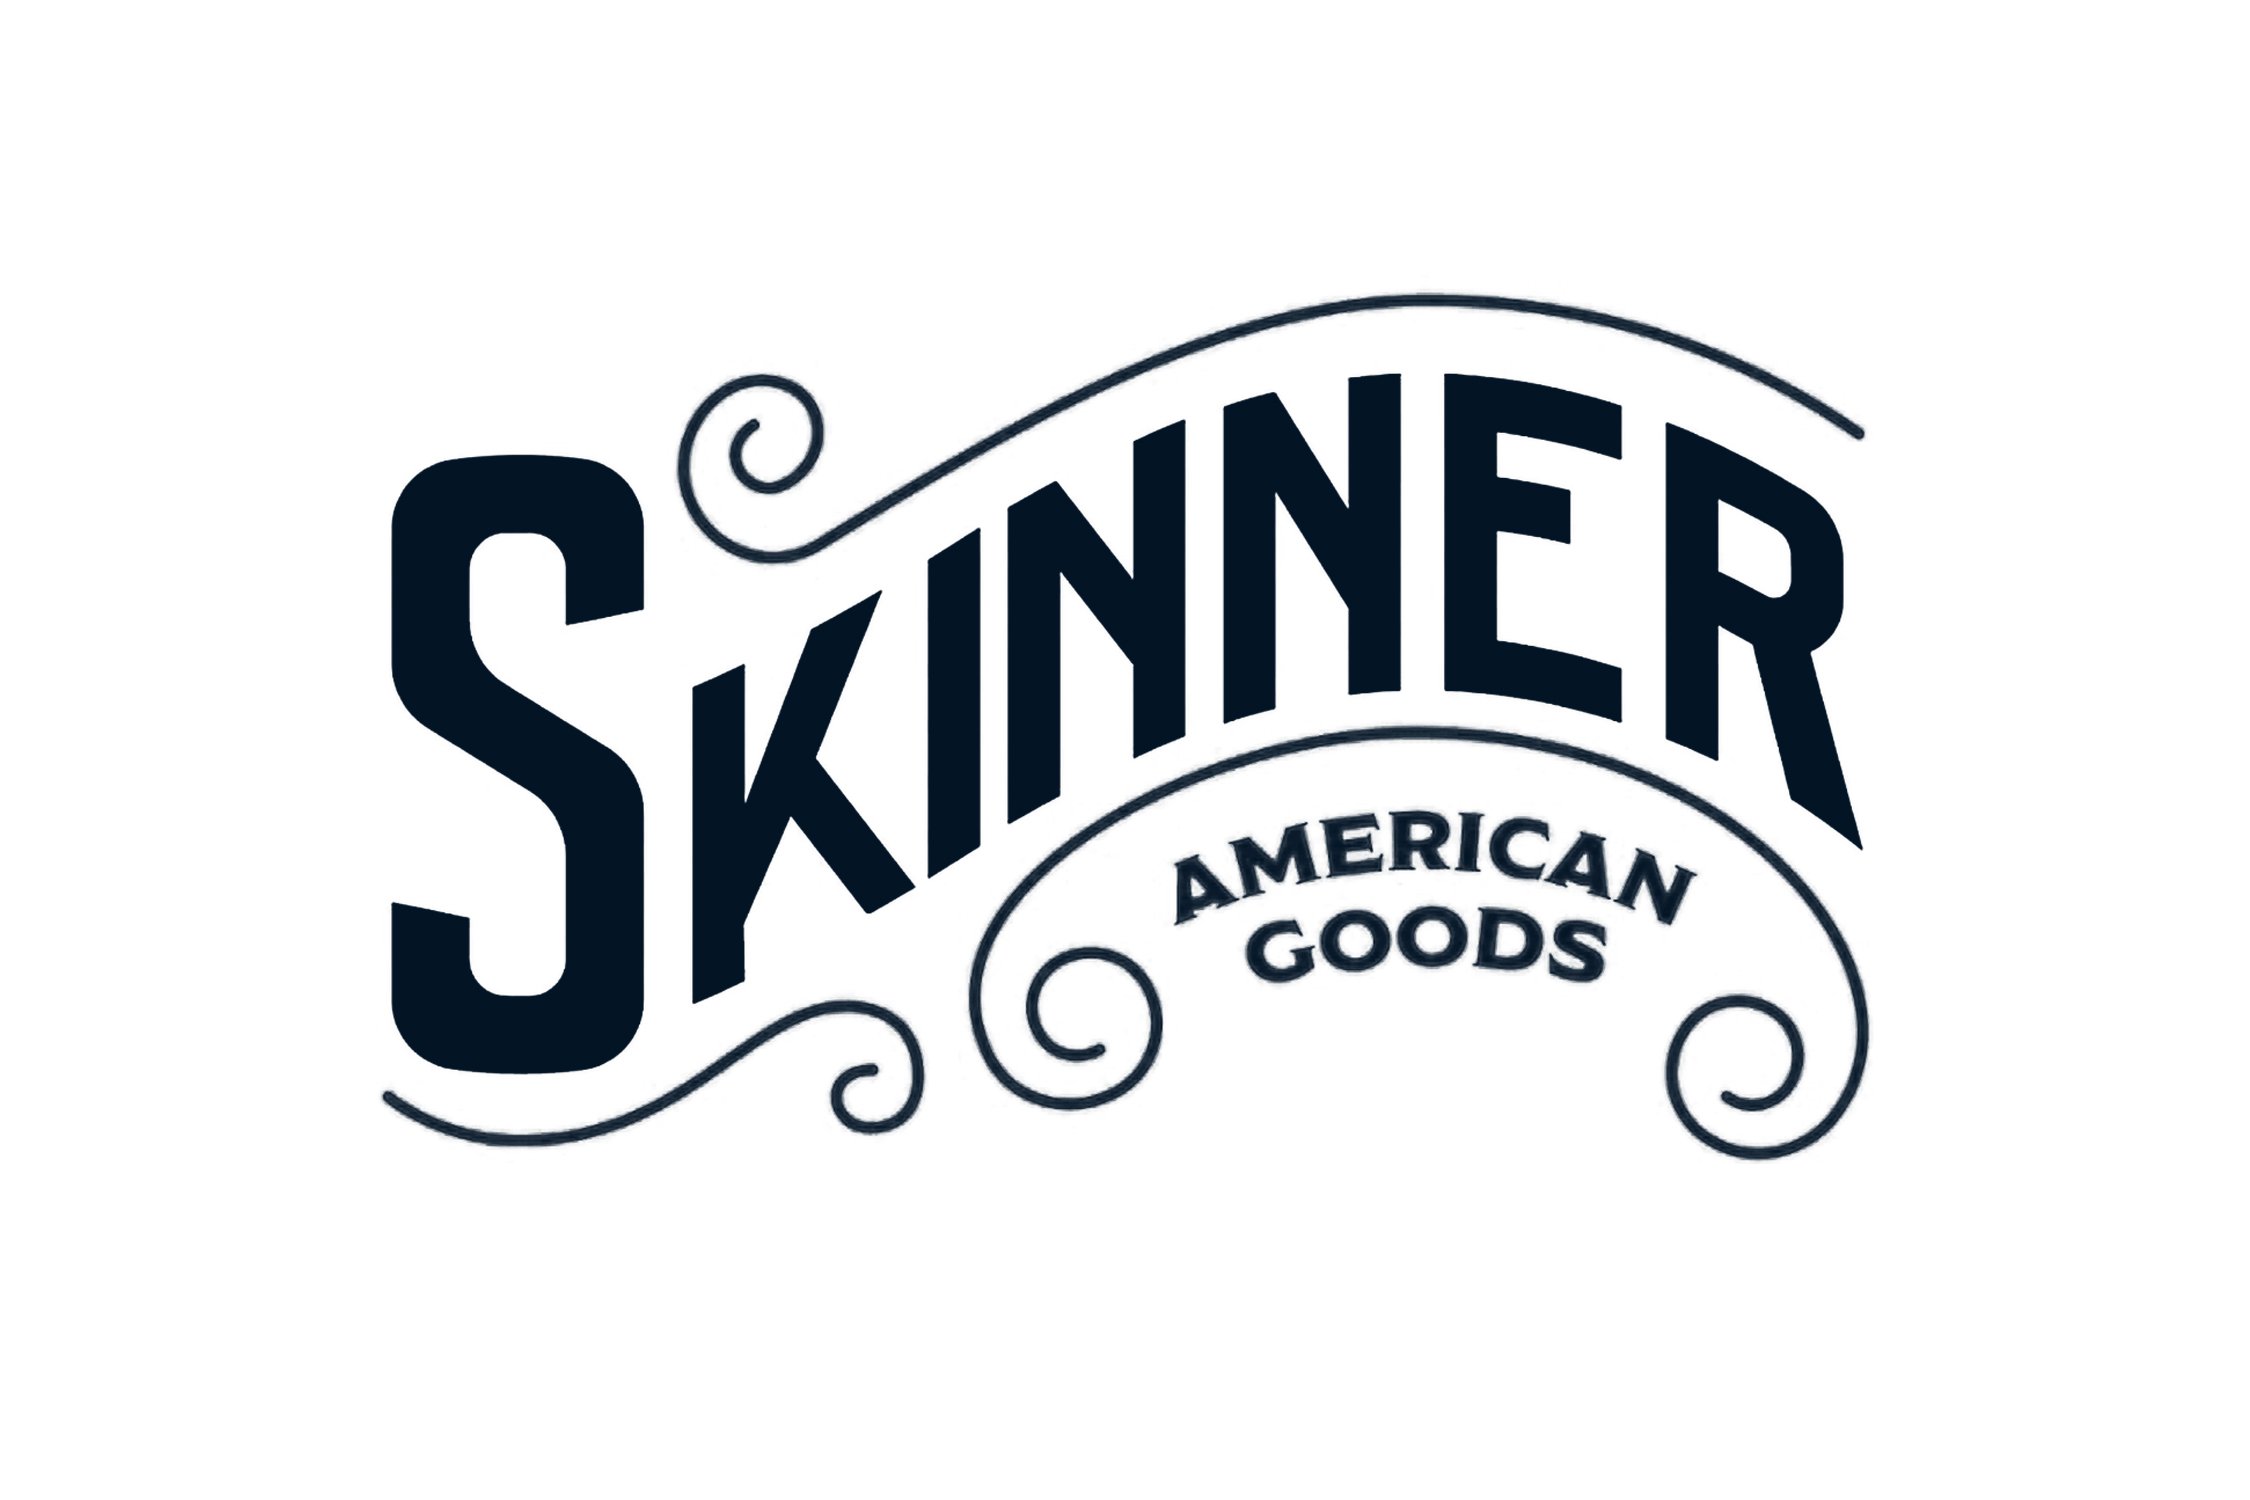 Skinner American Goods.jpg